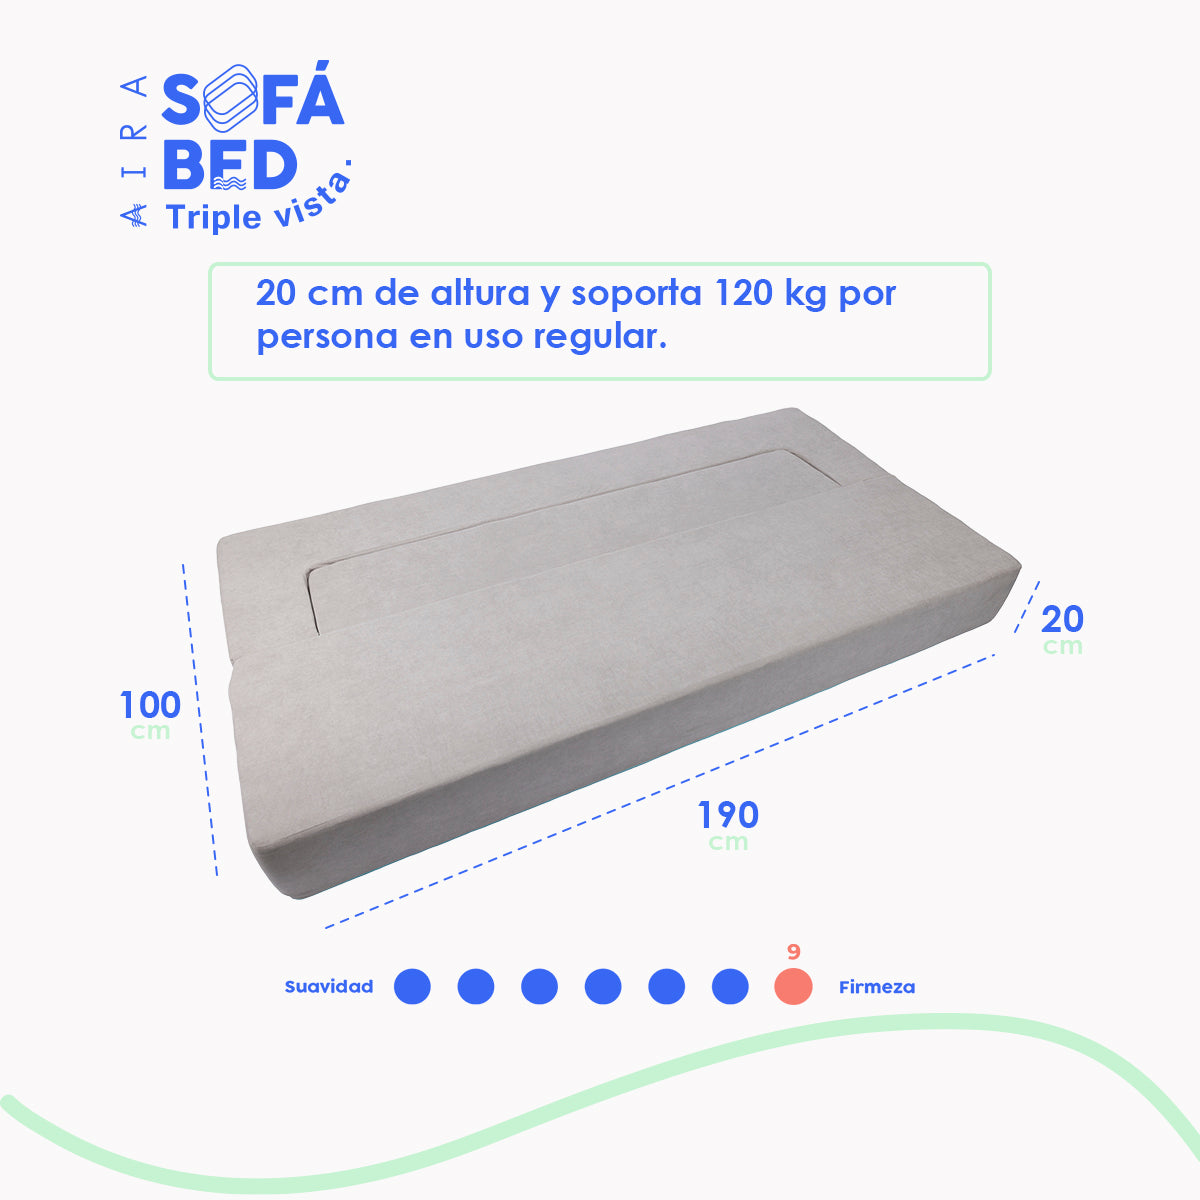 AIRA Sofa Bed colchón individual sillón 3 EN 1 8" (20cm) - AIRA SLEEP Colchones Memory Foam | Descuentos